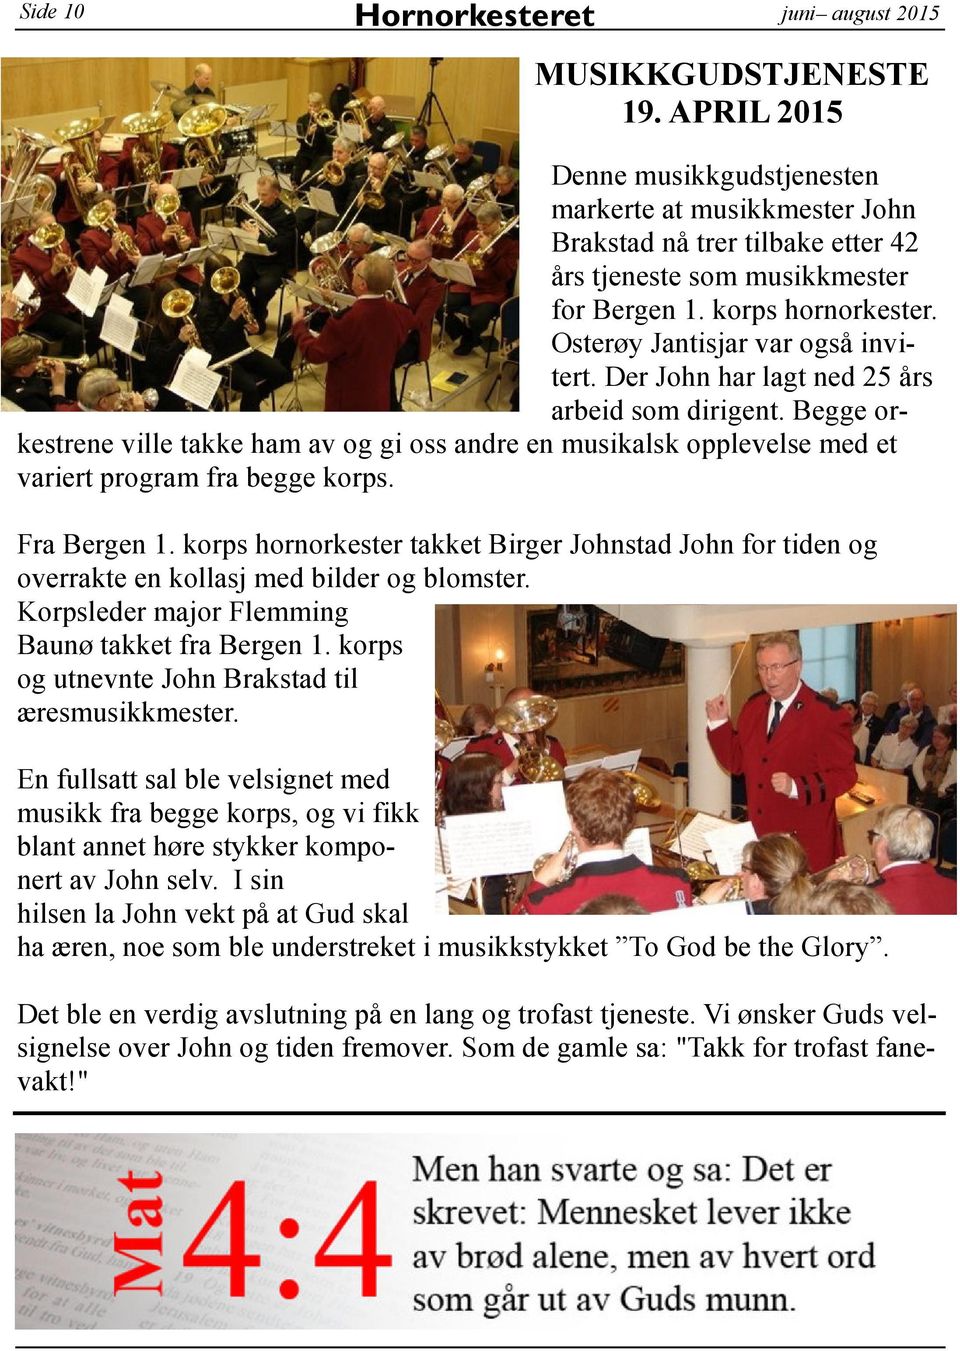 Osterøy Jantisjar var også invitert. Der John har lagt ned 25 års arbeid som dirigent.